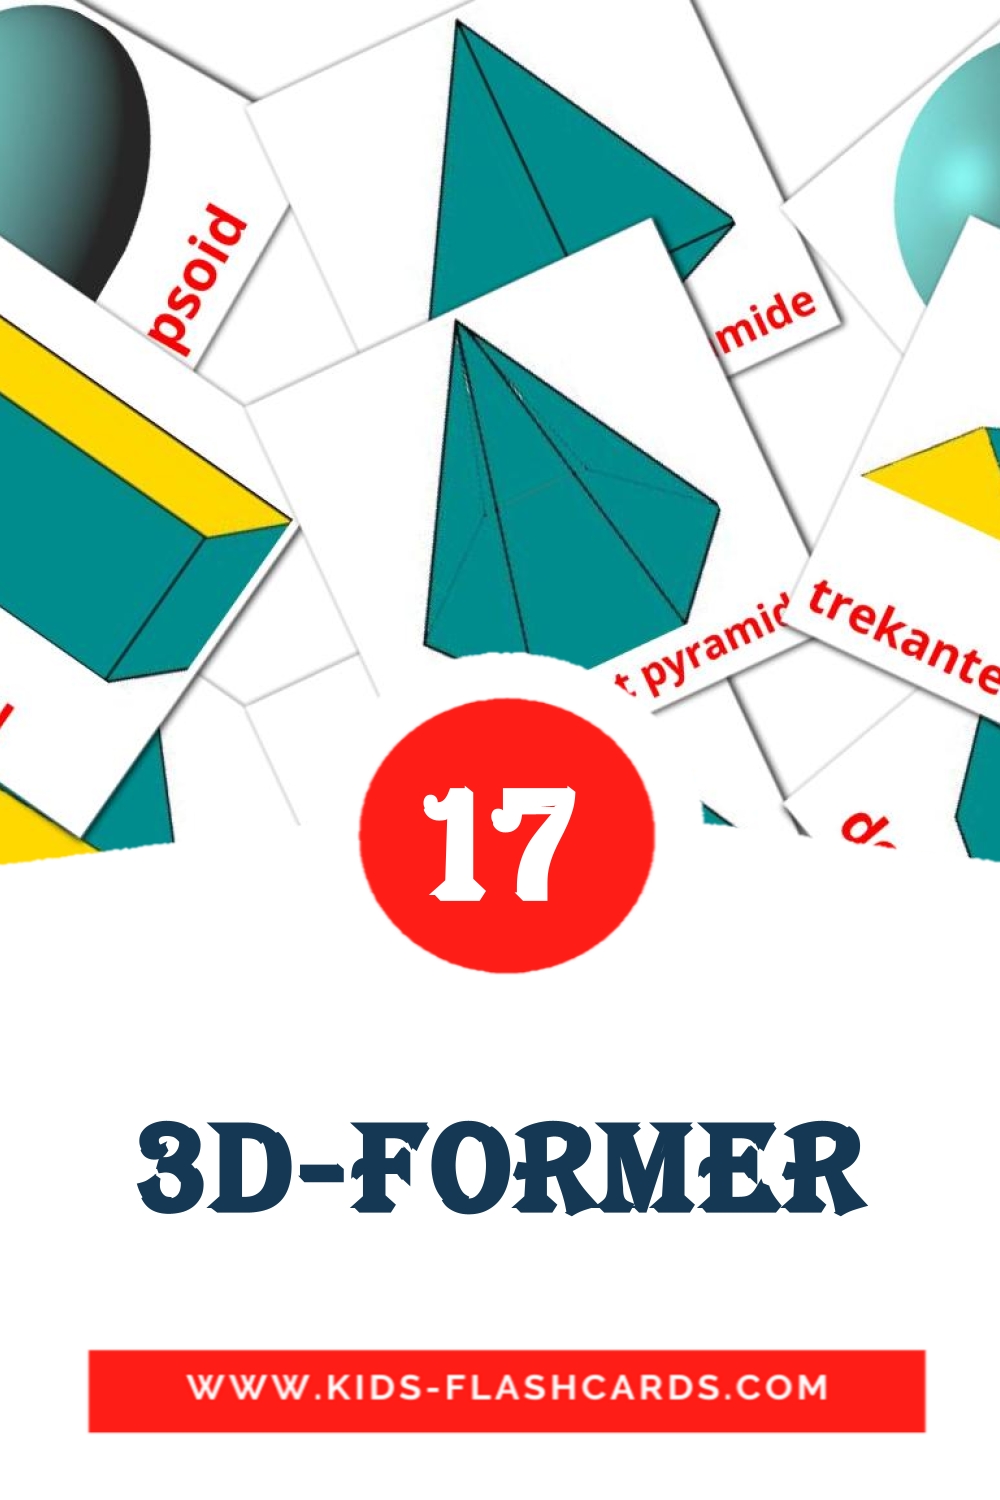 17 tarjetas didacticas de 3D-former para el jardín de infancia en noruego